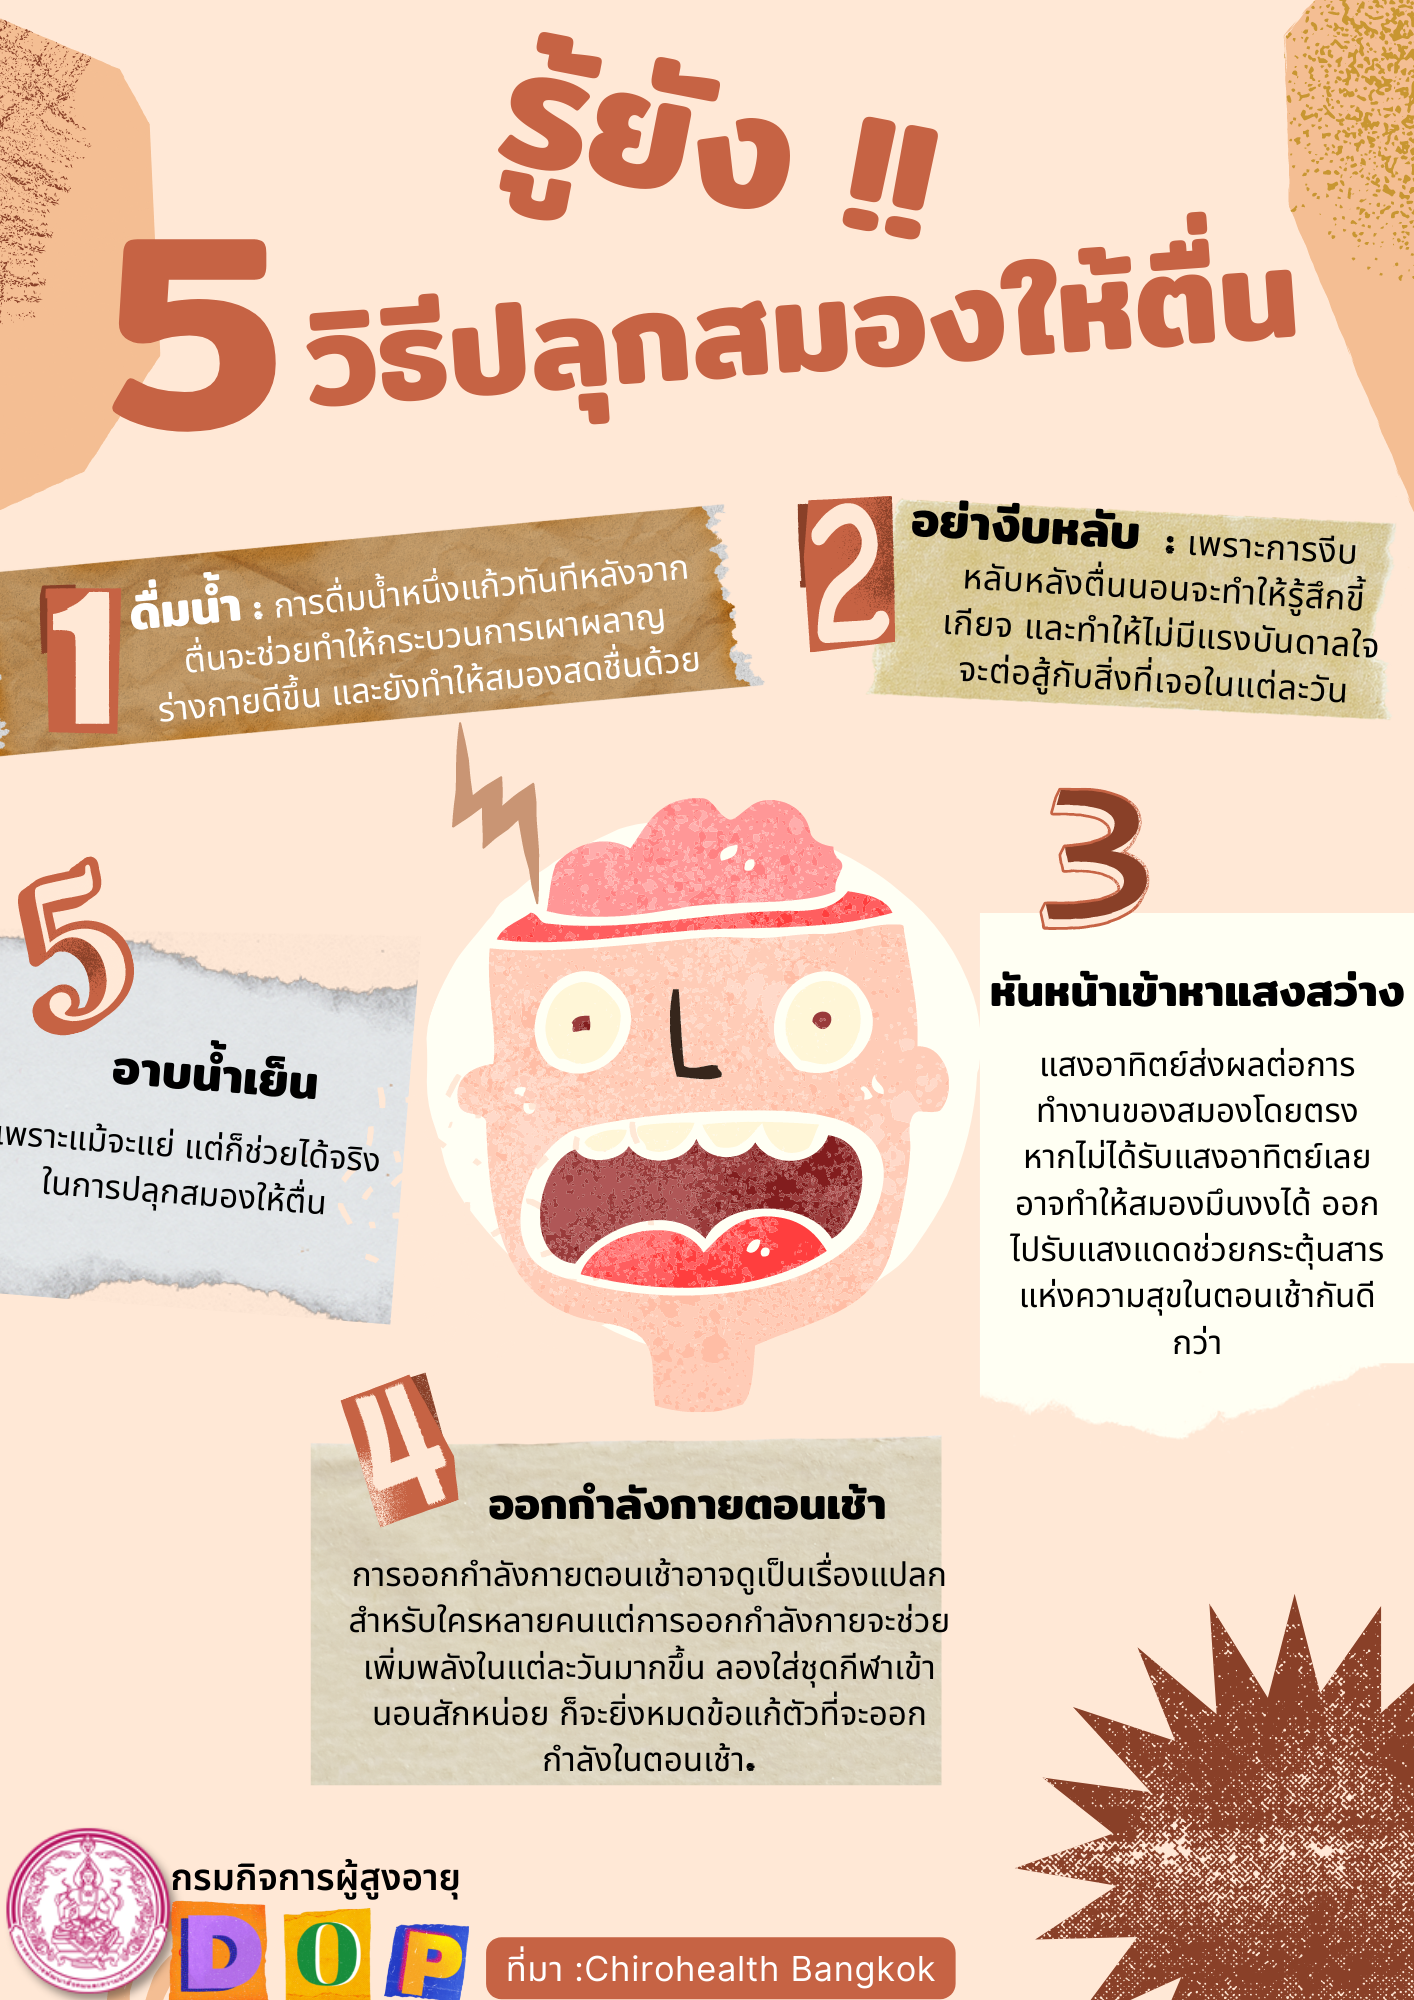 รู้ยัง!! 5 วิธีปลุกสมองให้ตื่น